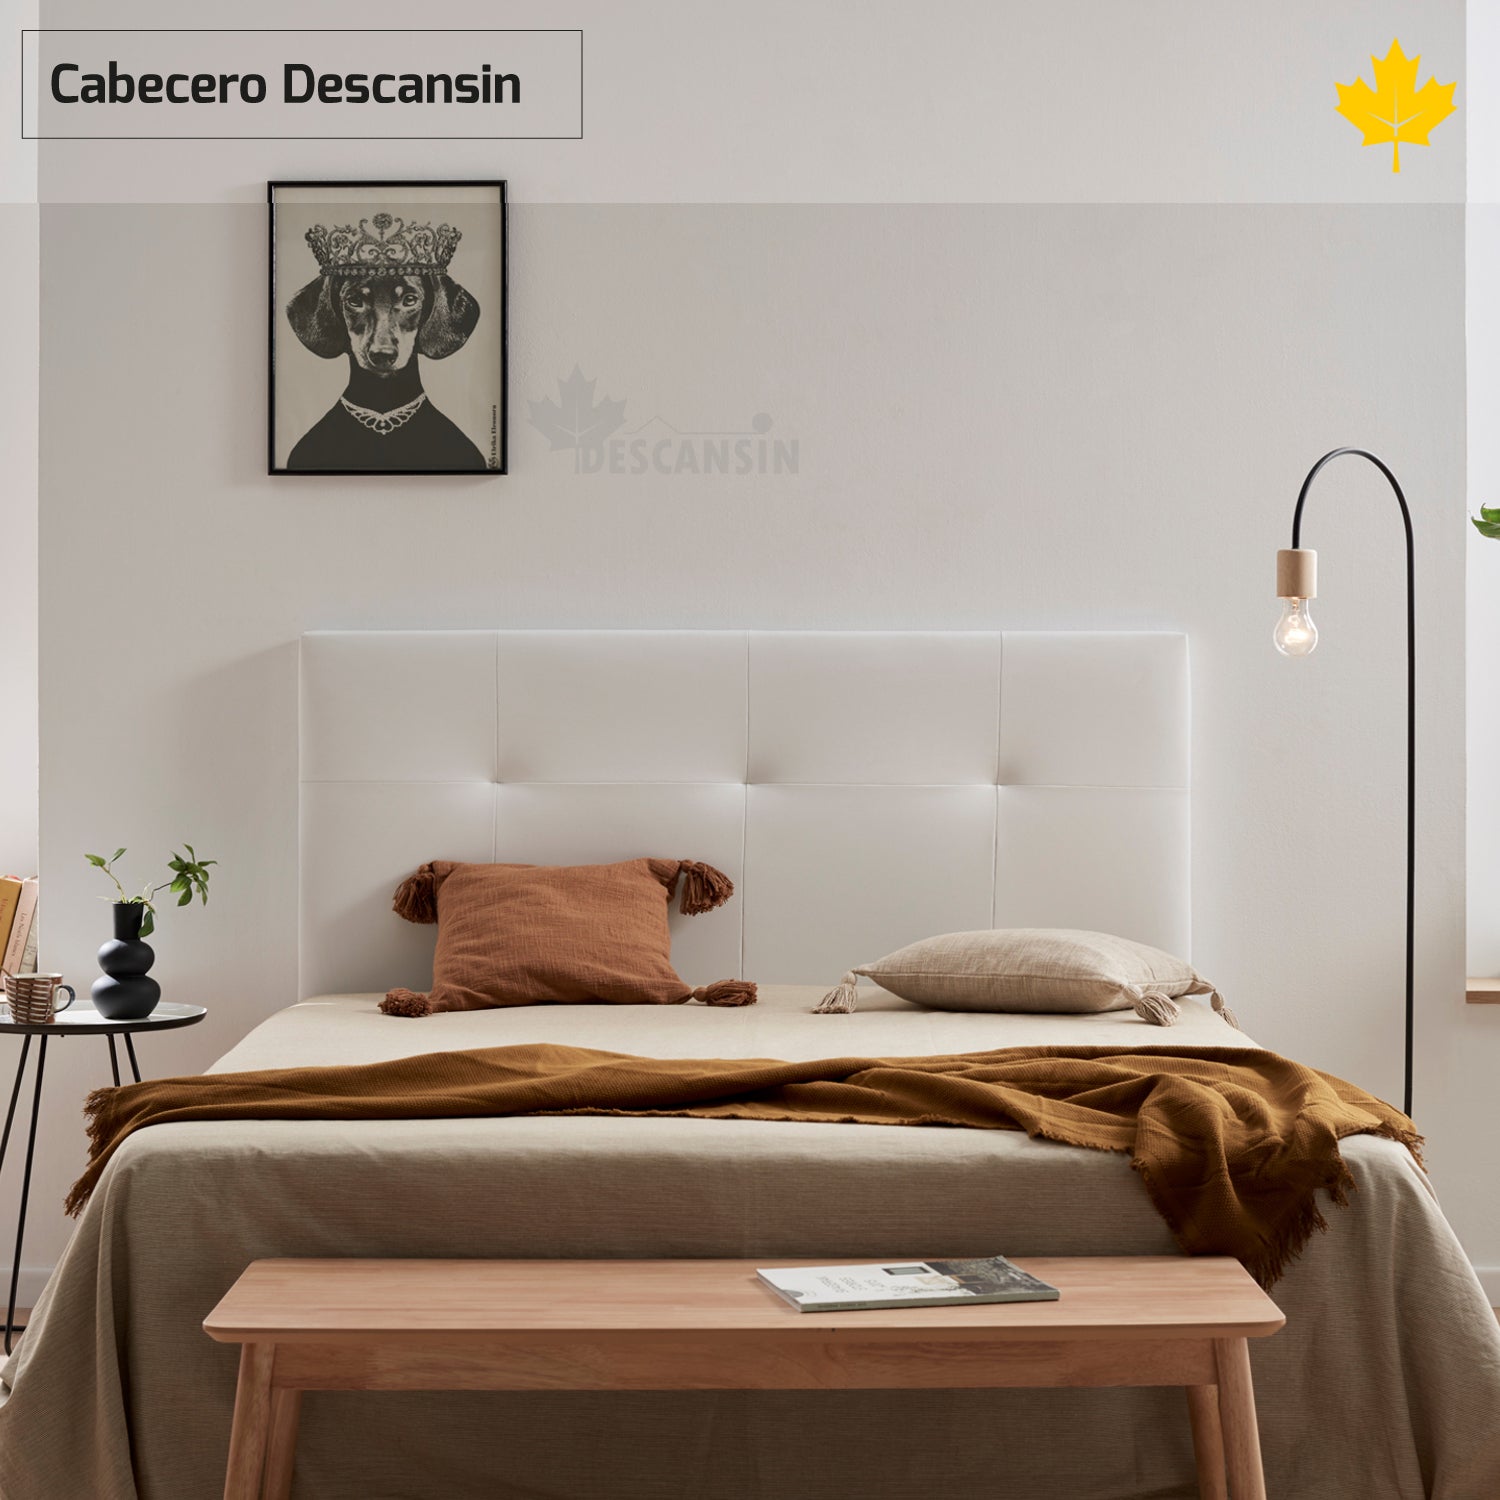 Cabecero cama 160 cm JANA. Cabecero color blanco andersen y detalle grises,  apto para camas 135, 150 y 160 cm.